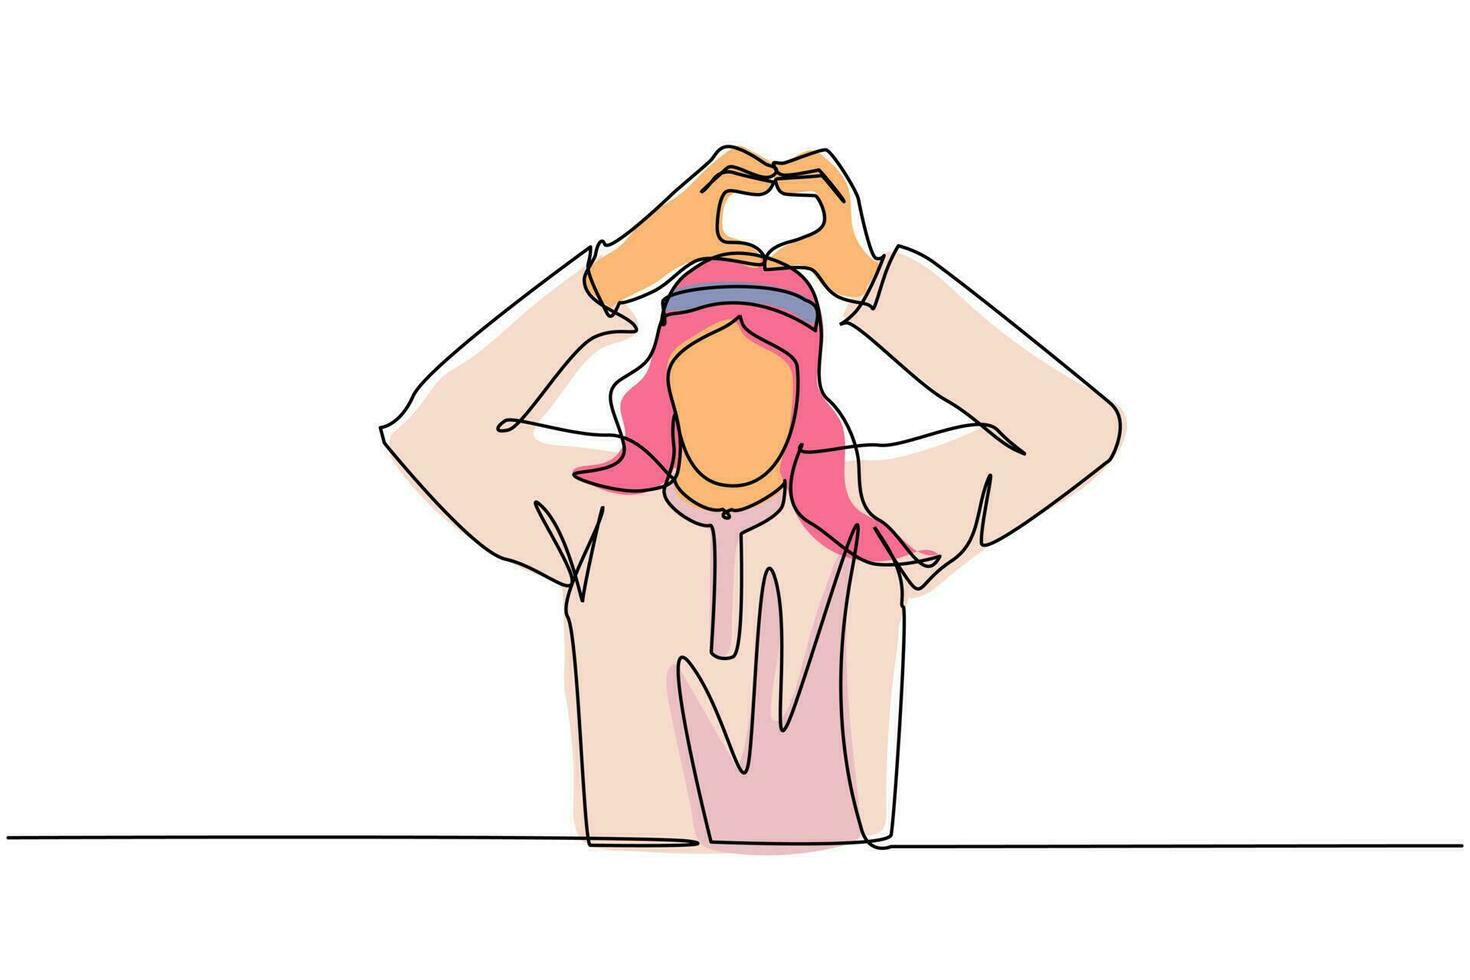 enda en rad ritning ung arabisk man gör eller gester hjärtsymbol med fingrar. modern manlig livsstil, sjukvård, kärleksformkoncept. kontinuerlig linje rita design grafisk vektorillustration vektor